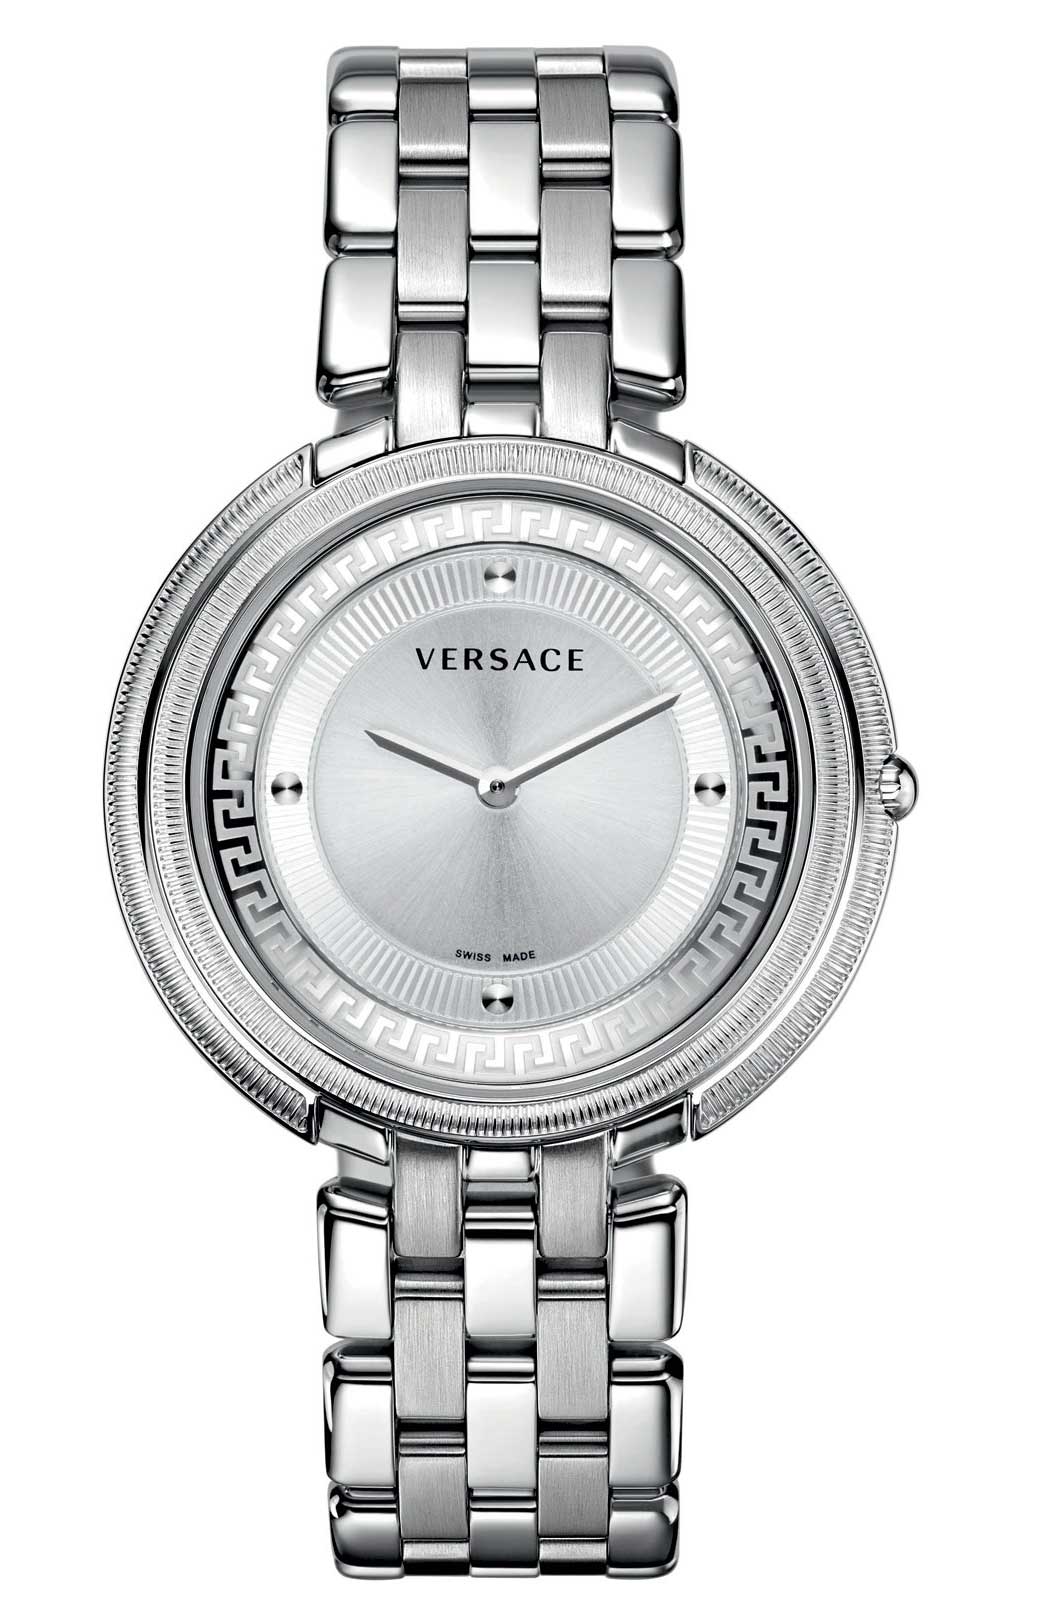 Versace QUARTZ watch 762 STEEL